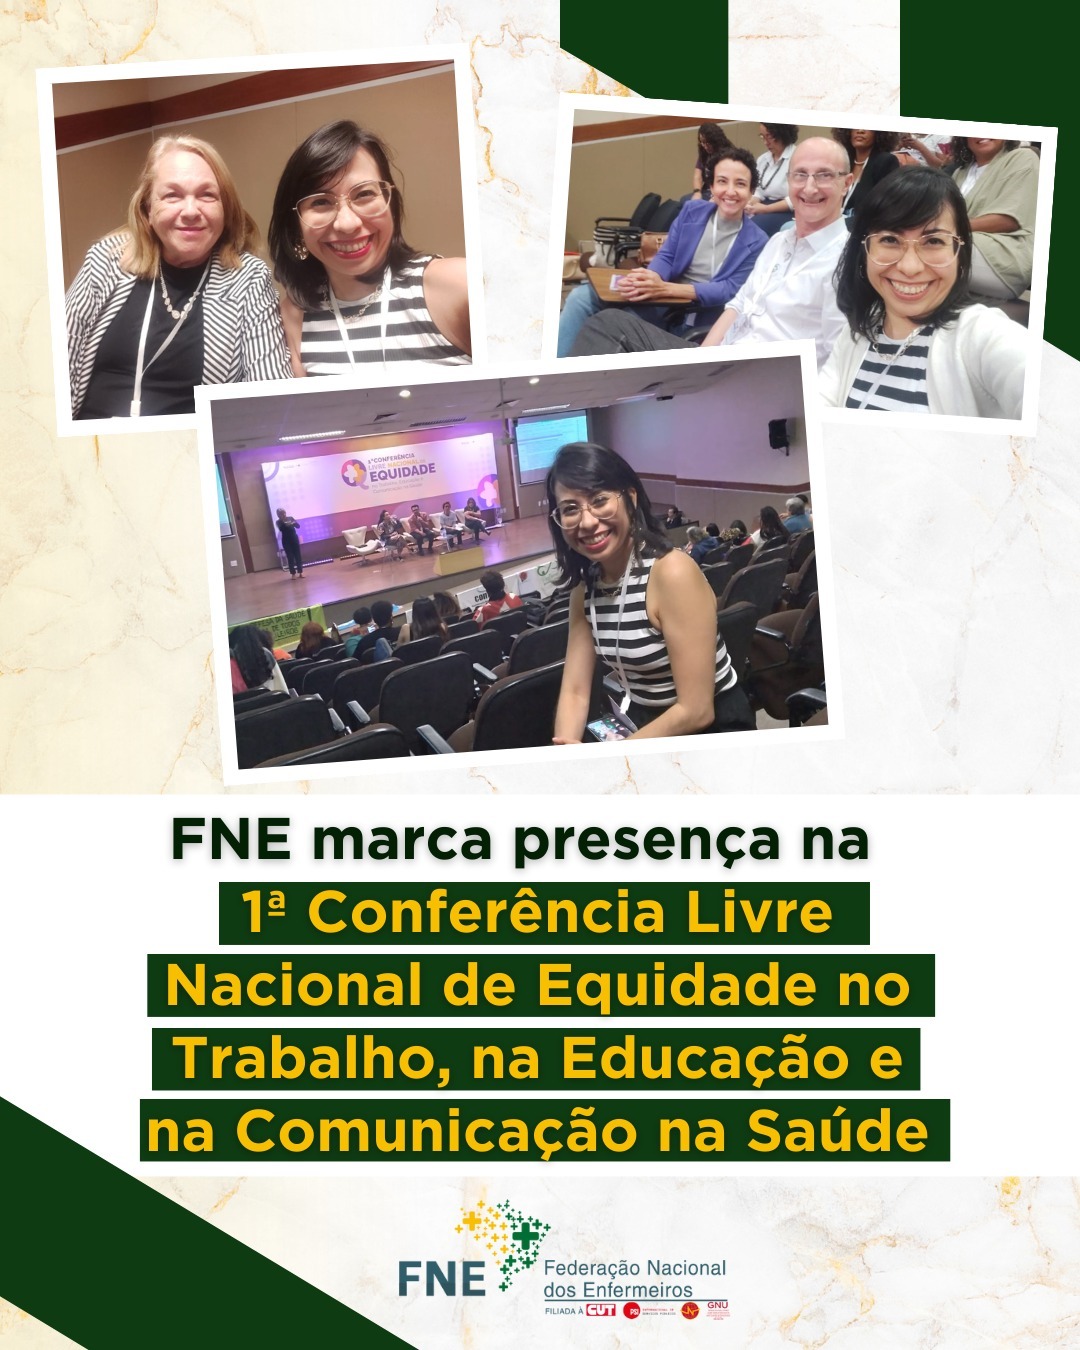 FNE marca presença na 1ª Conferência Livre Nacional de Equidade no Trabalho, na Educação e na Comunicação na Saúde